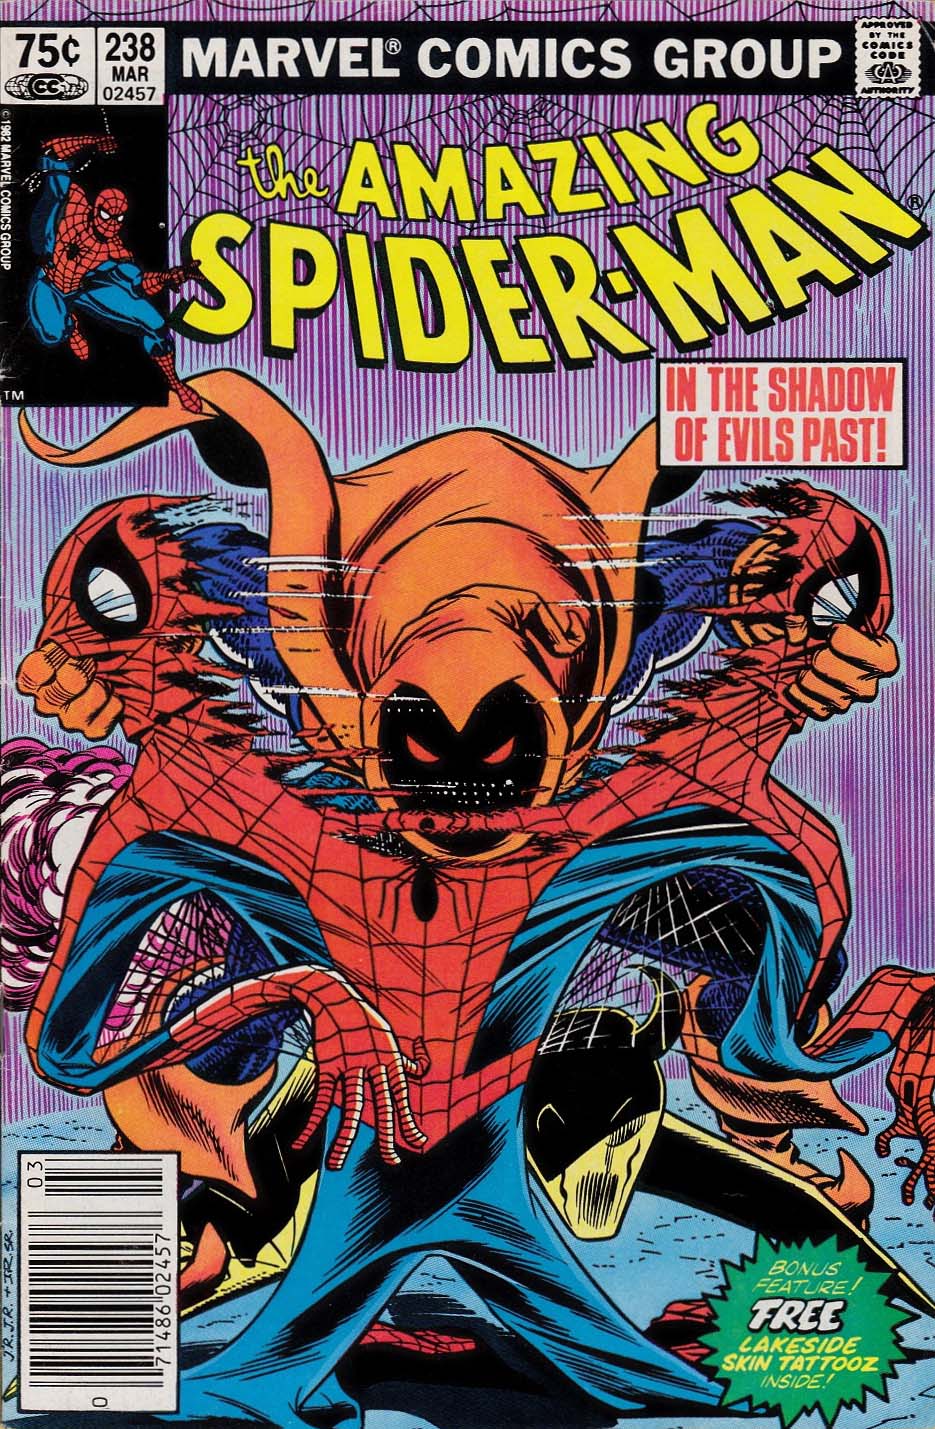 Submarine Channel | Best Spider-Man Comics - Submarine Channel